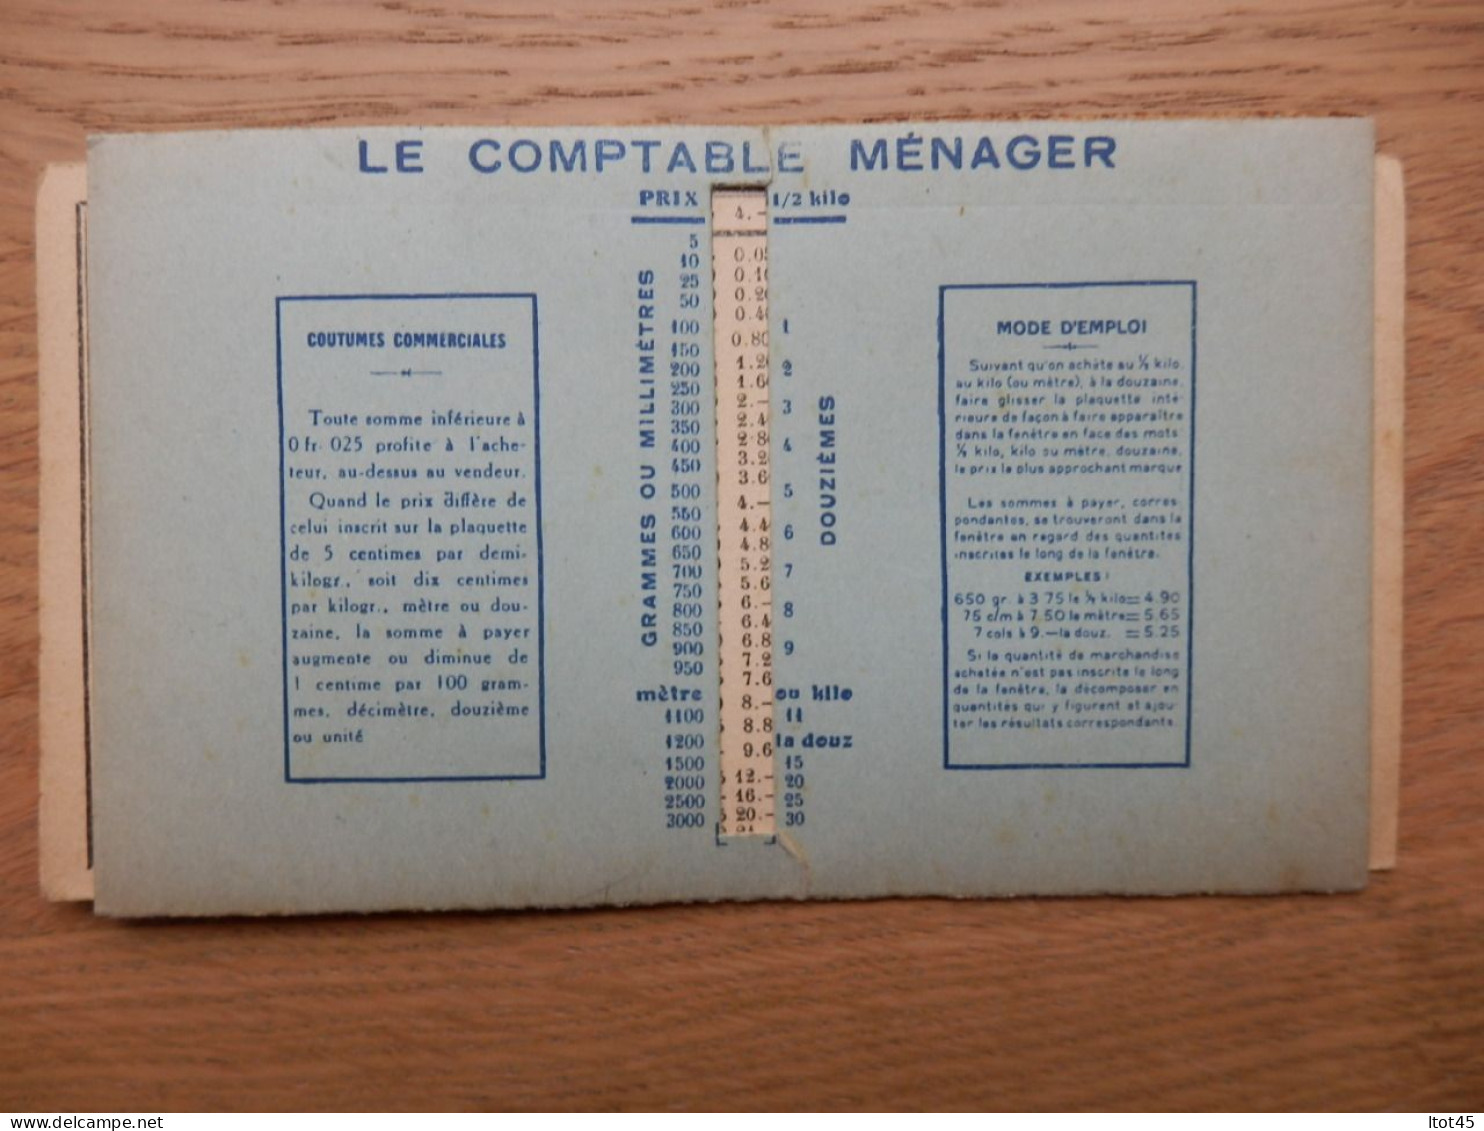 CARTE LE COMPTABLE MENAGER MEDAILLE DE VERMEIL CONCOURS LEPINE 1925 - Material Y Accesorios